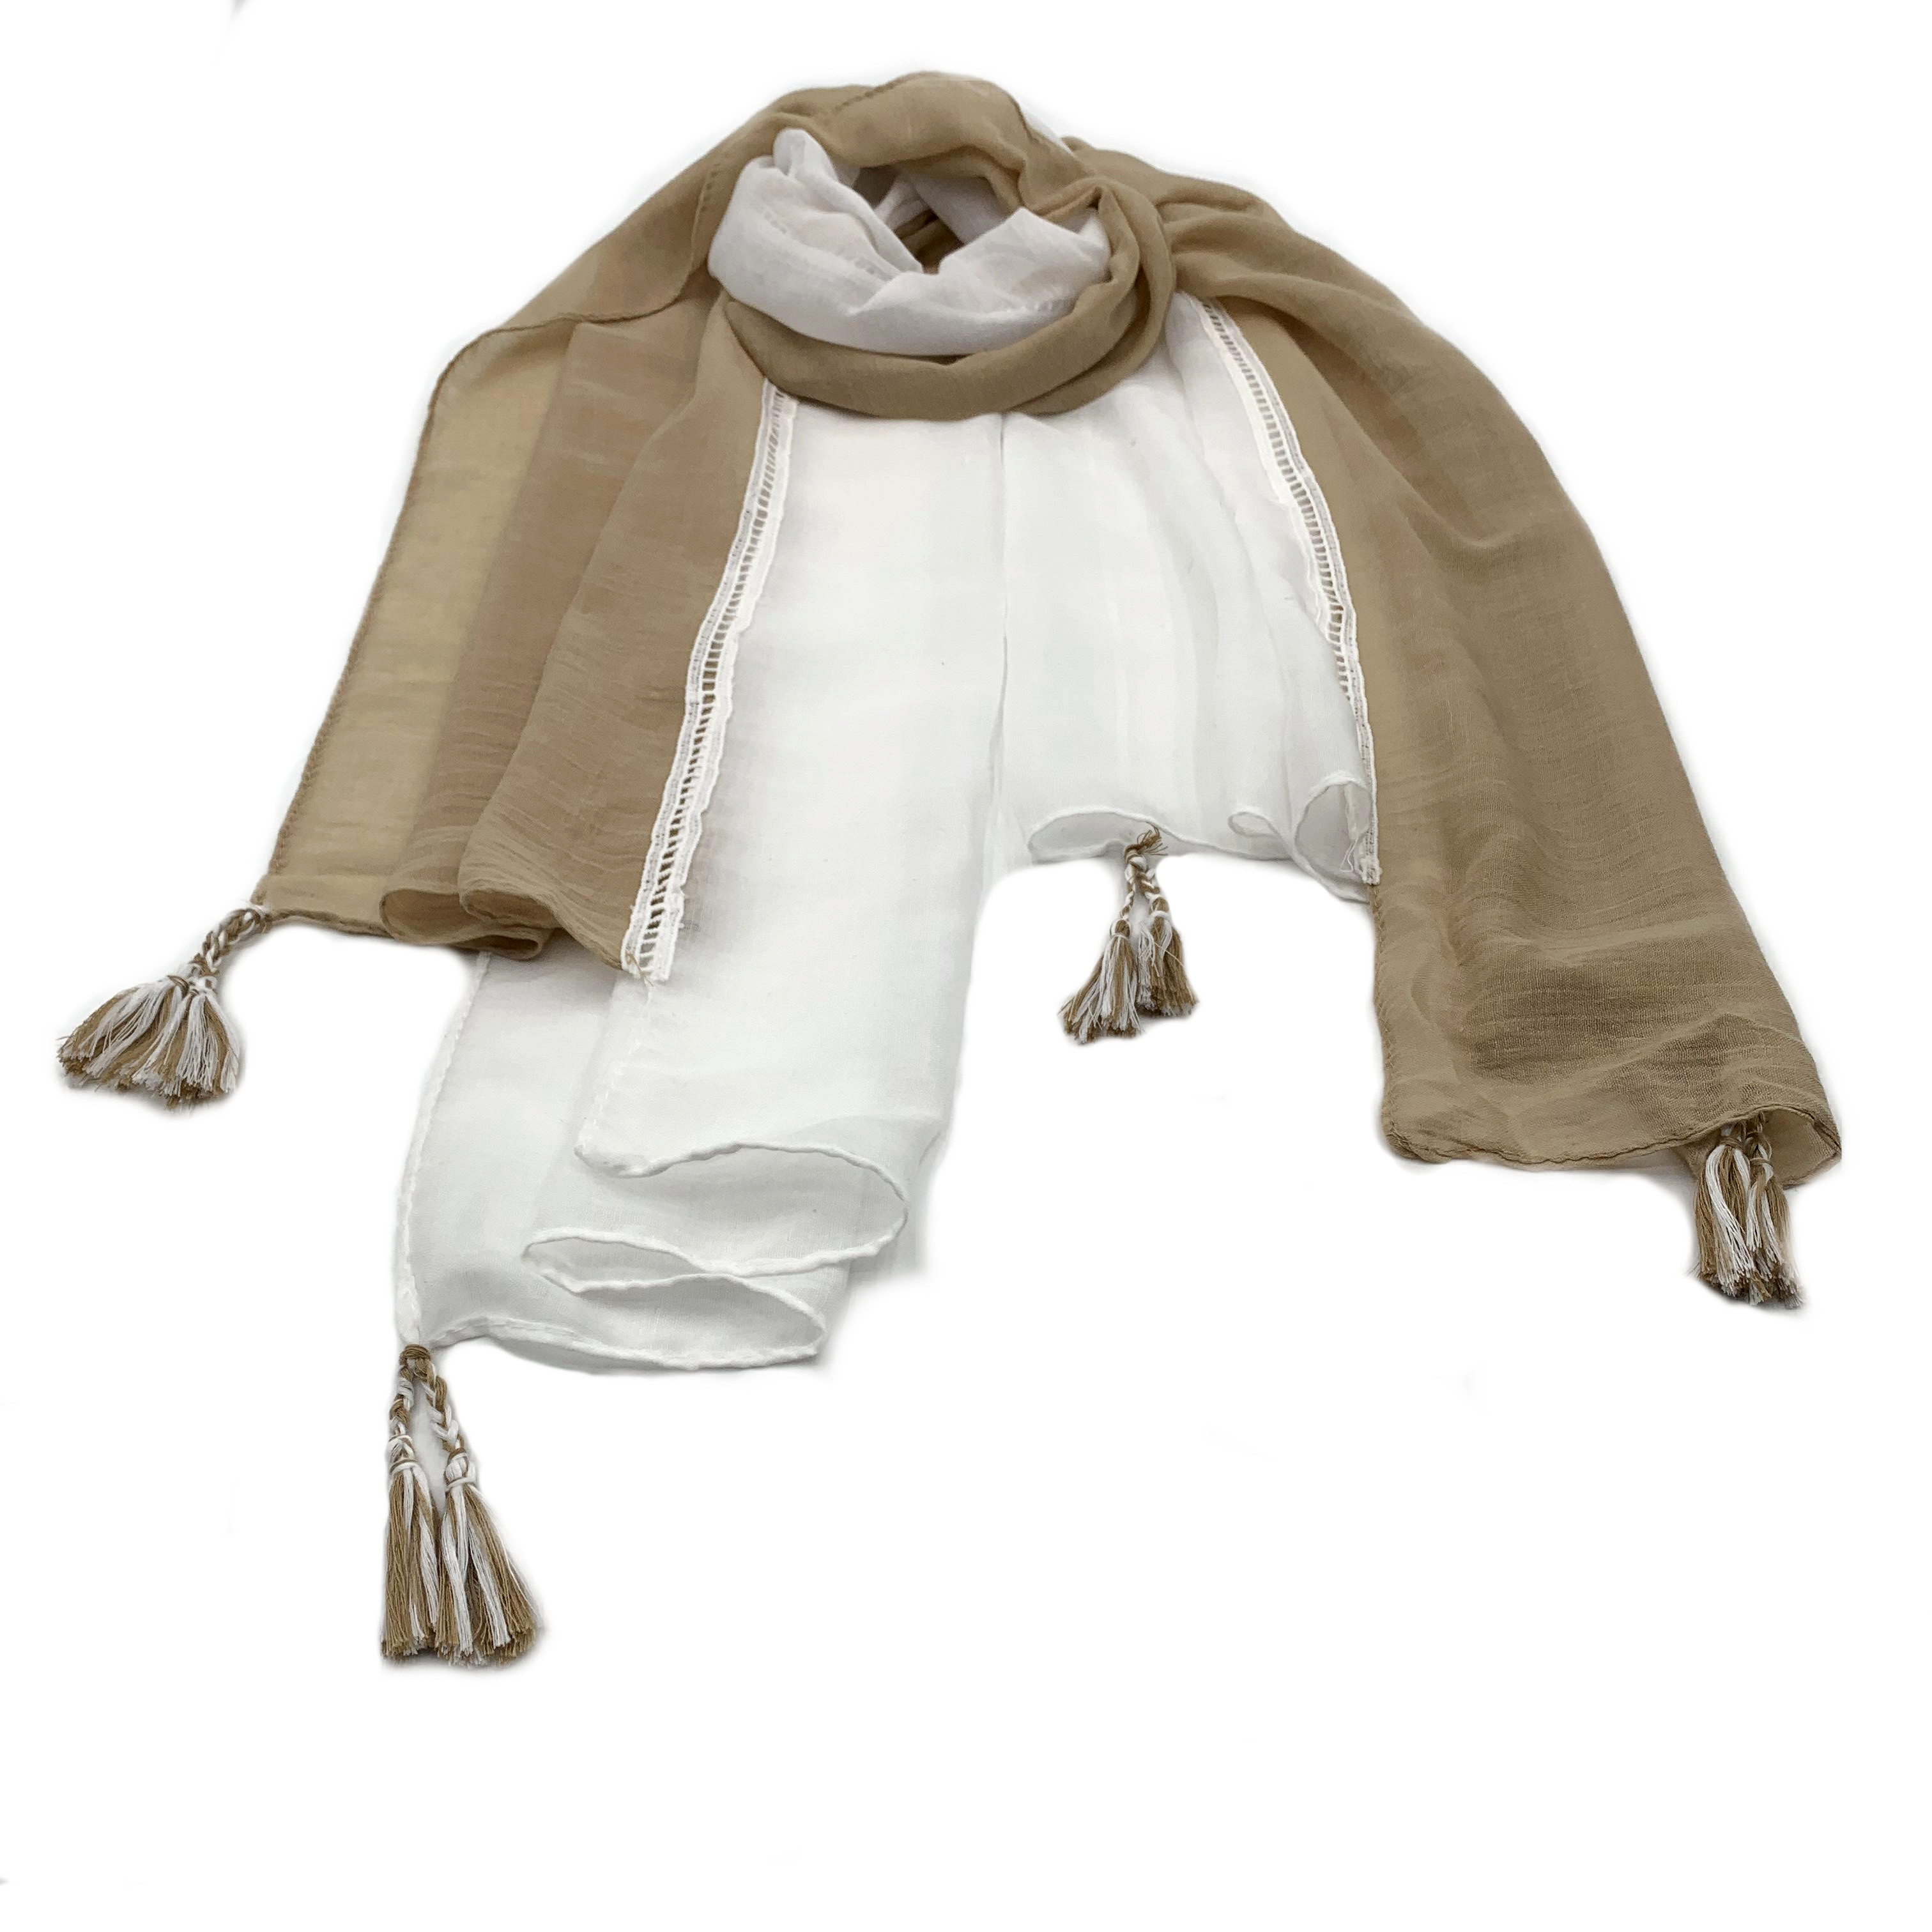 Atmosférické vysoce kvalitní spojování vytváří šátek ve stylu odlišného temperamentu